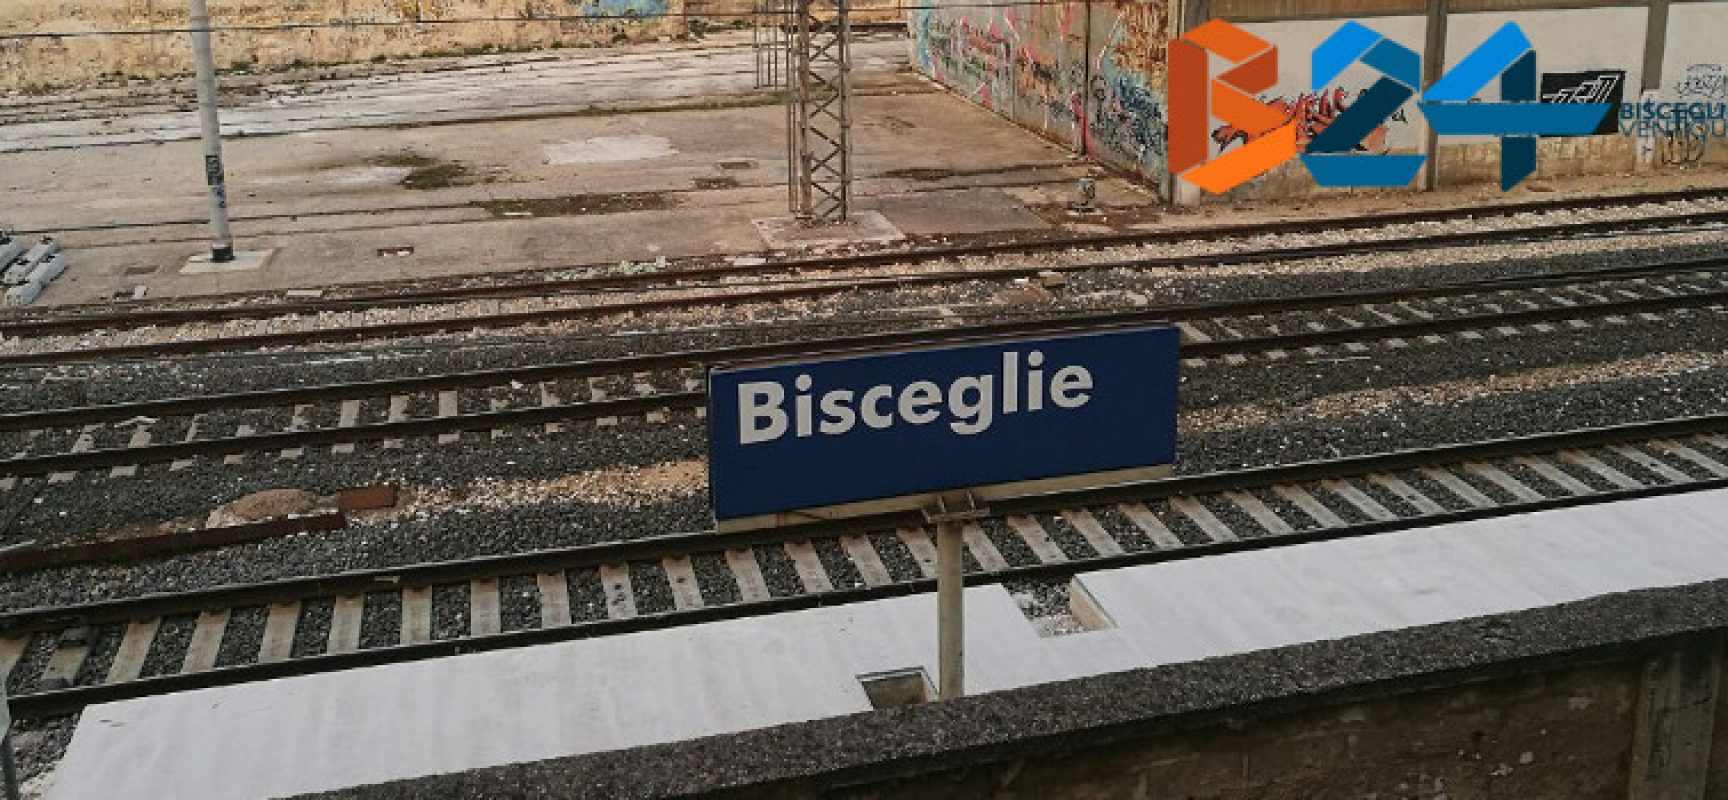 Treni: persona investita, circolazione bloccata tra Bisceglie e Trani